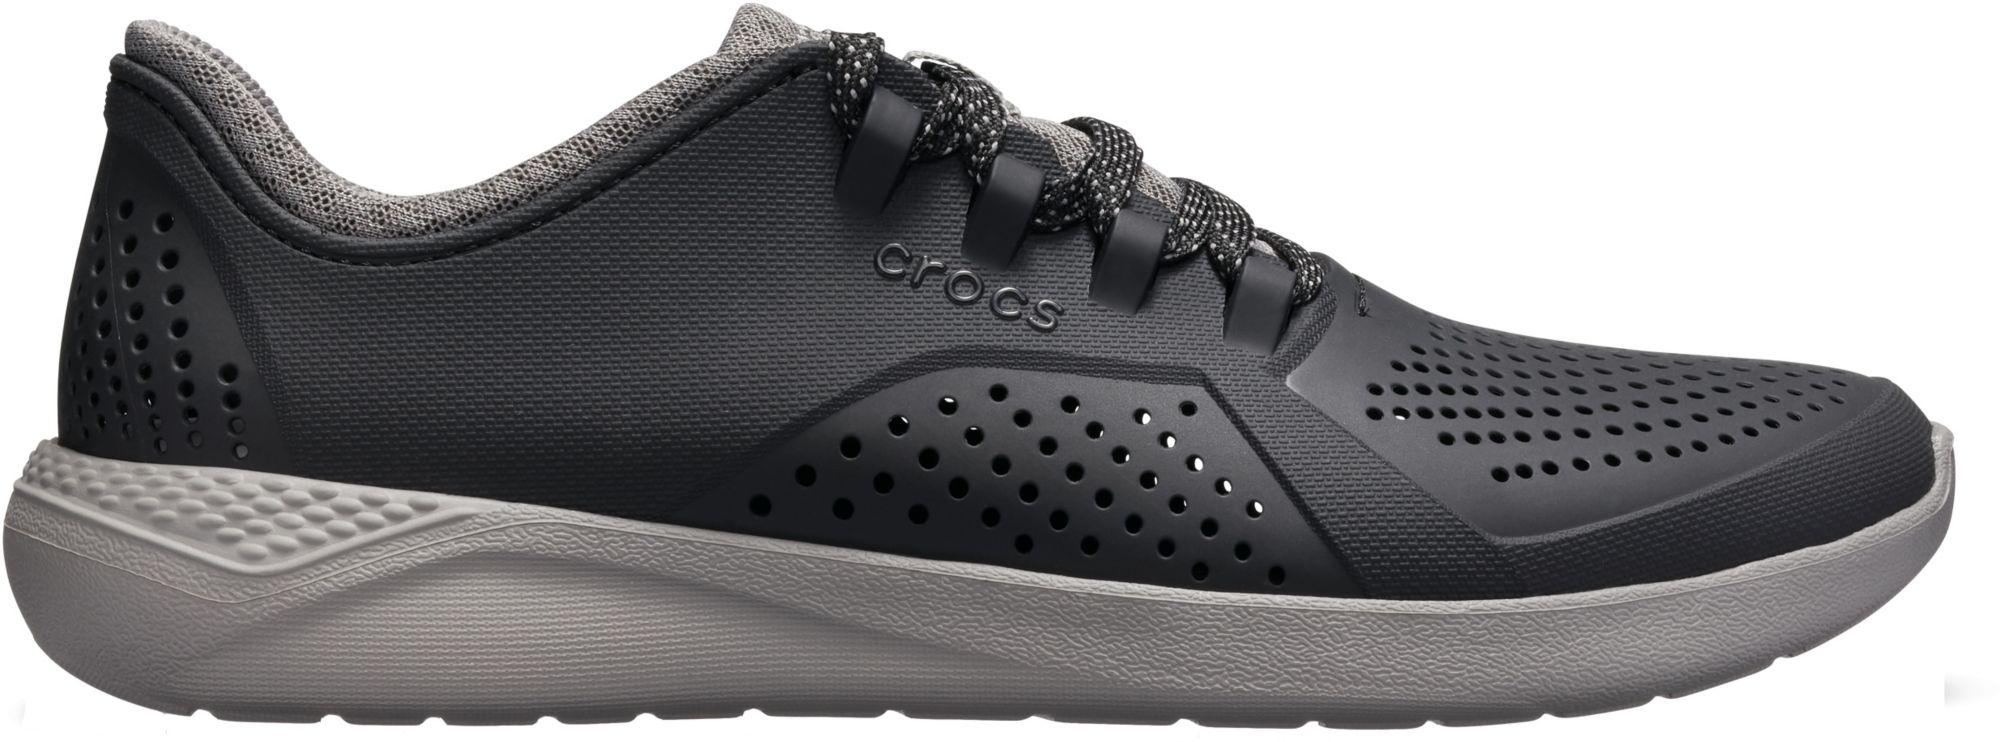 croc tennis shoes mens